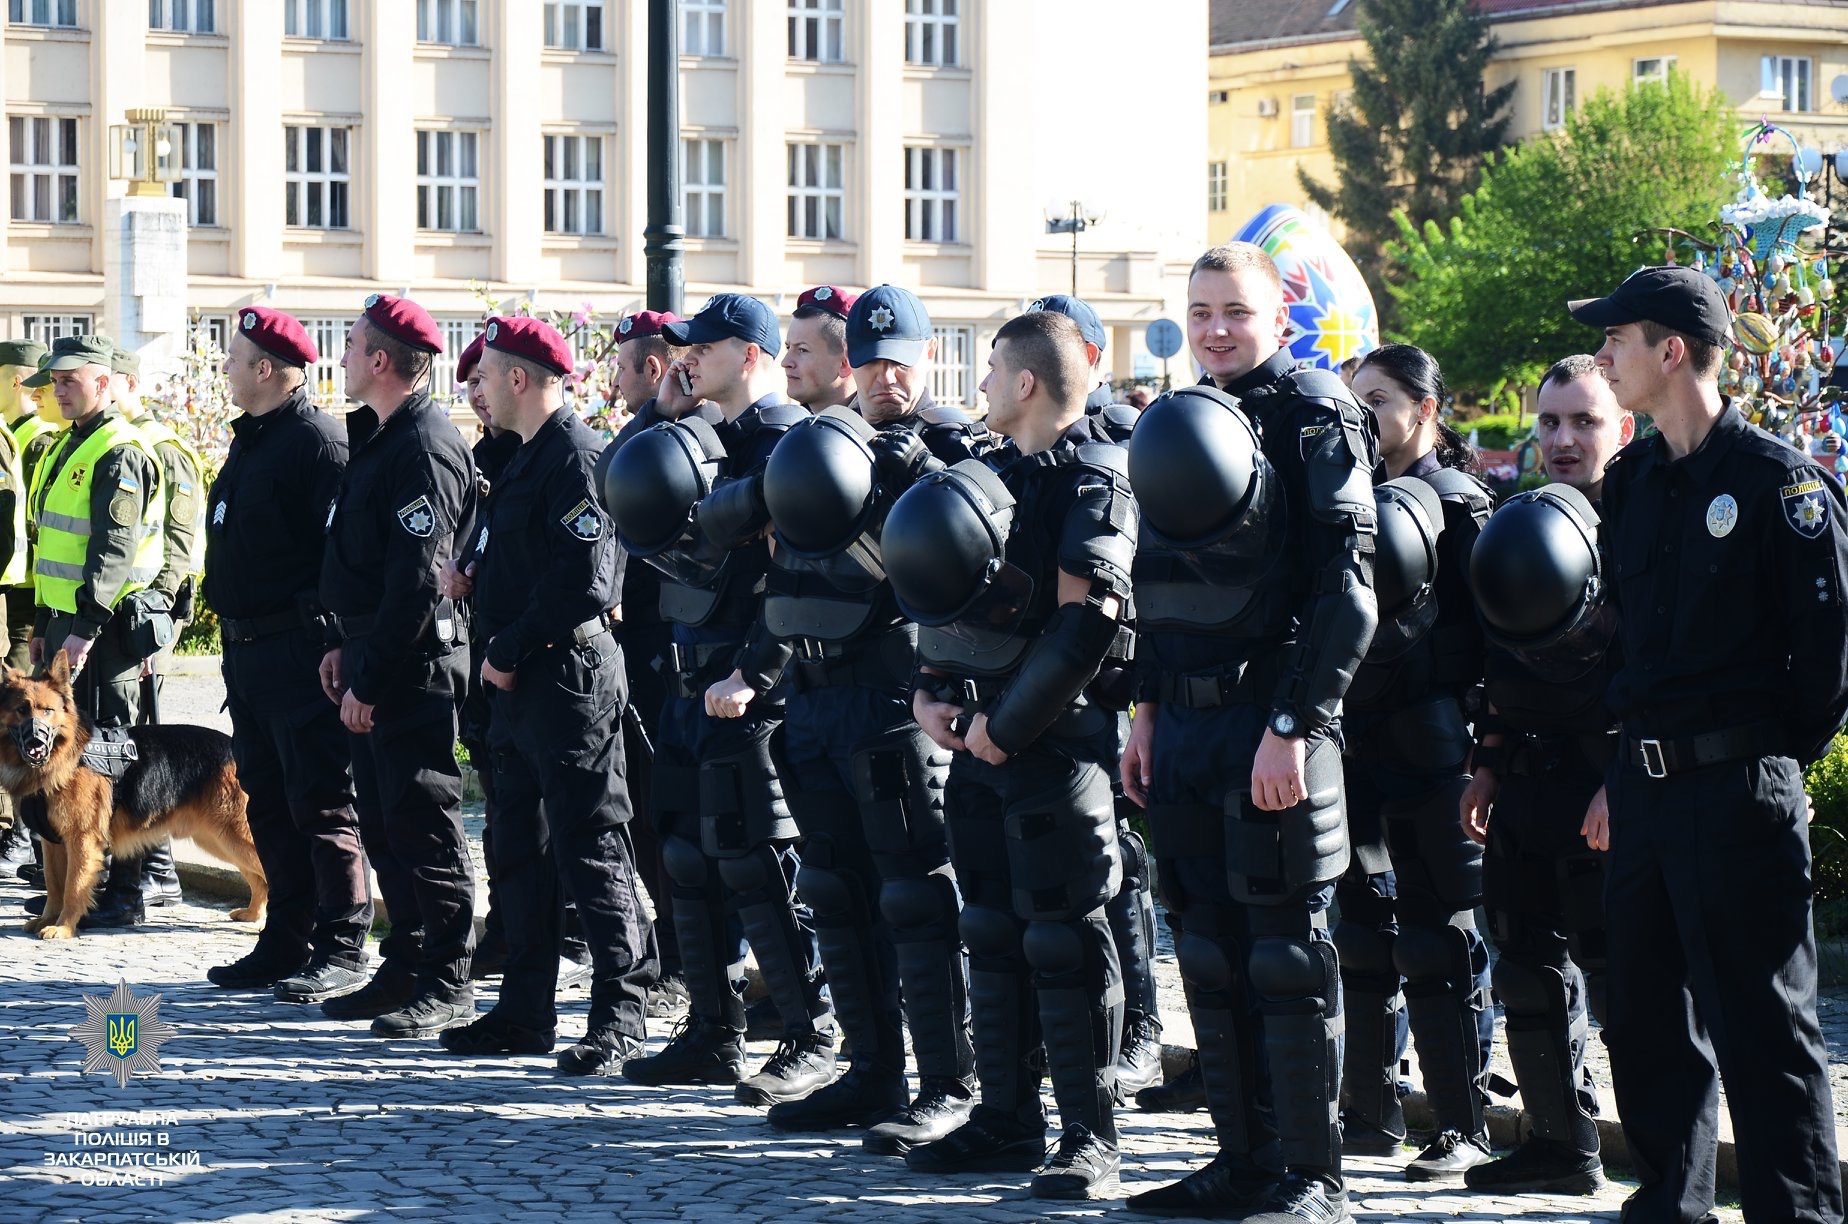 Учора, 21 квітня, керівник патрульної поліції у містах Ужгород та Мукачево Юрій Марценишин на площі Народній в Ужгороді представив підрозділ патрульної поліції – ТОР.

